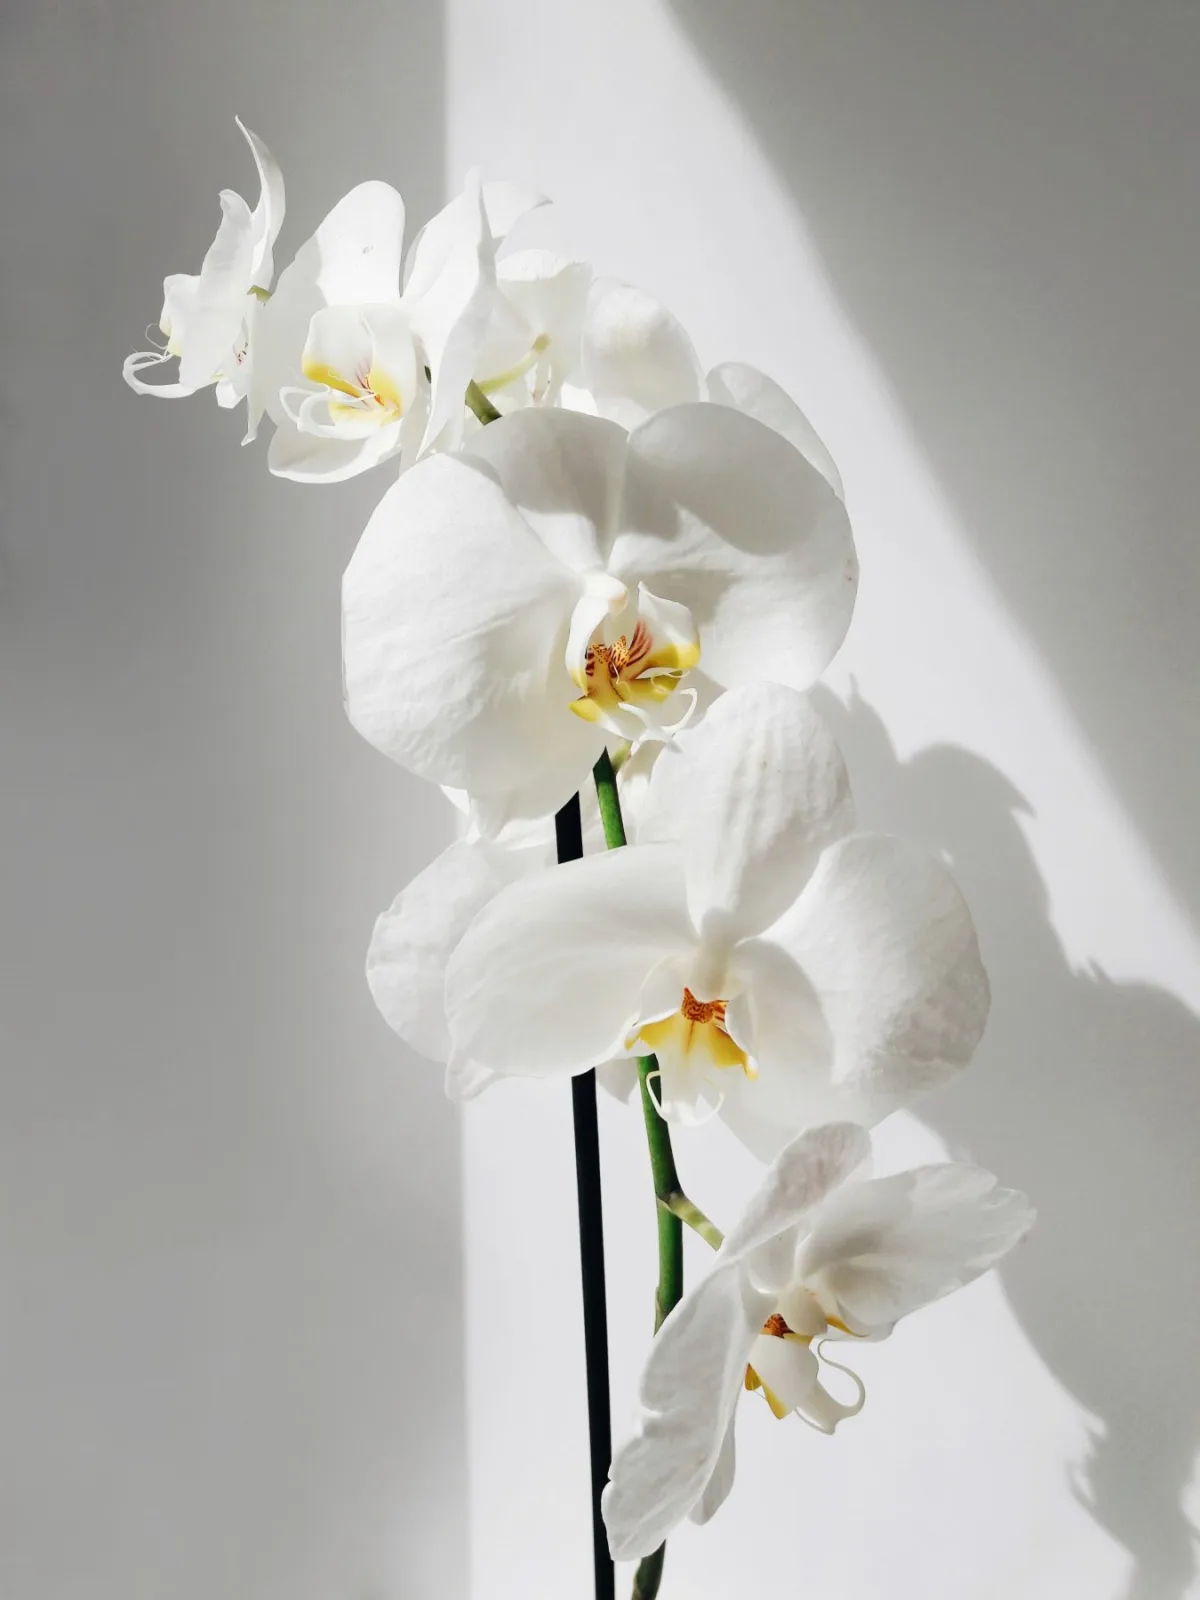 comment bien entretenir ses plants d orchidee